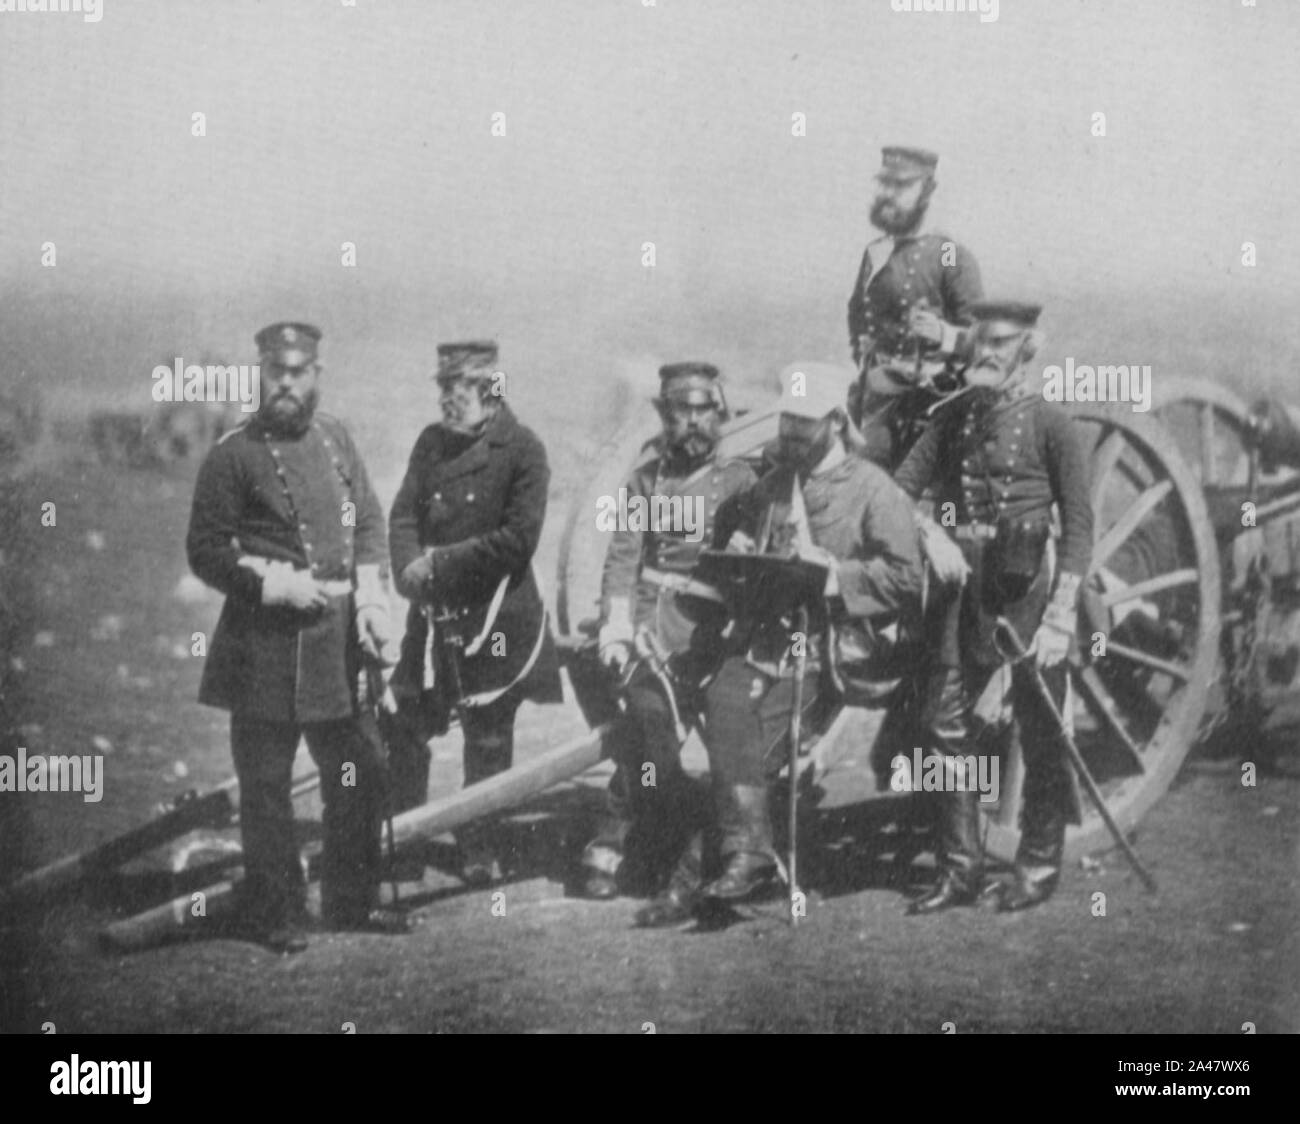 Fenton, Roger - Offiziere und Kanonenwagen Stock Photo